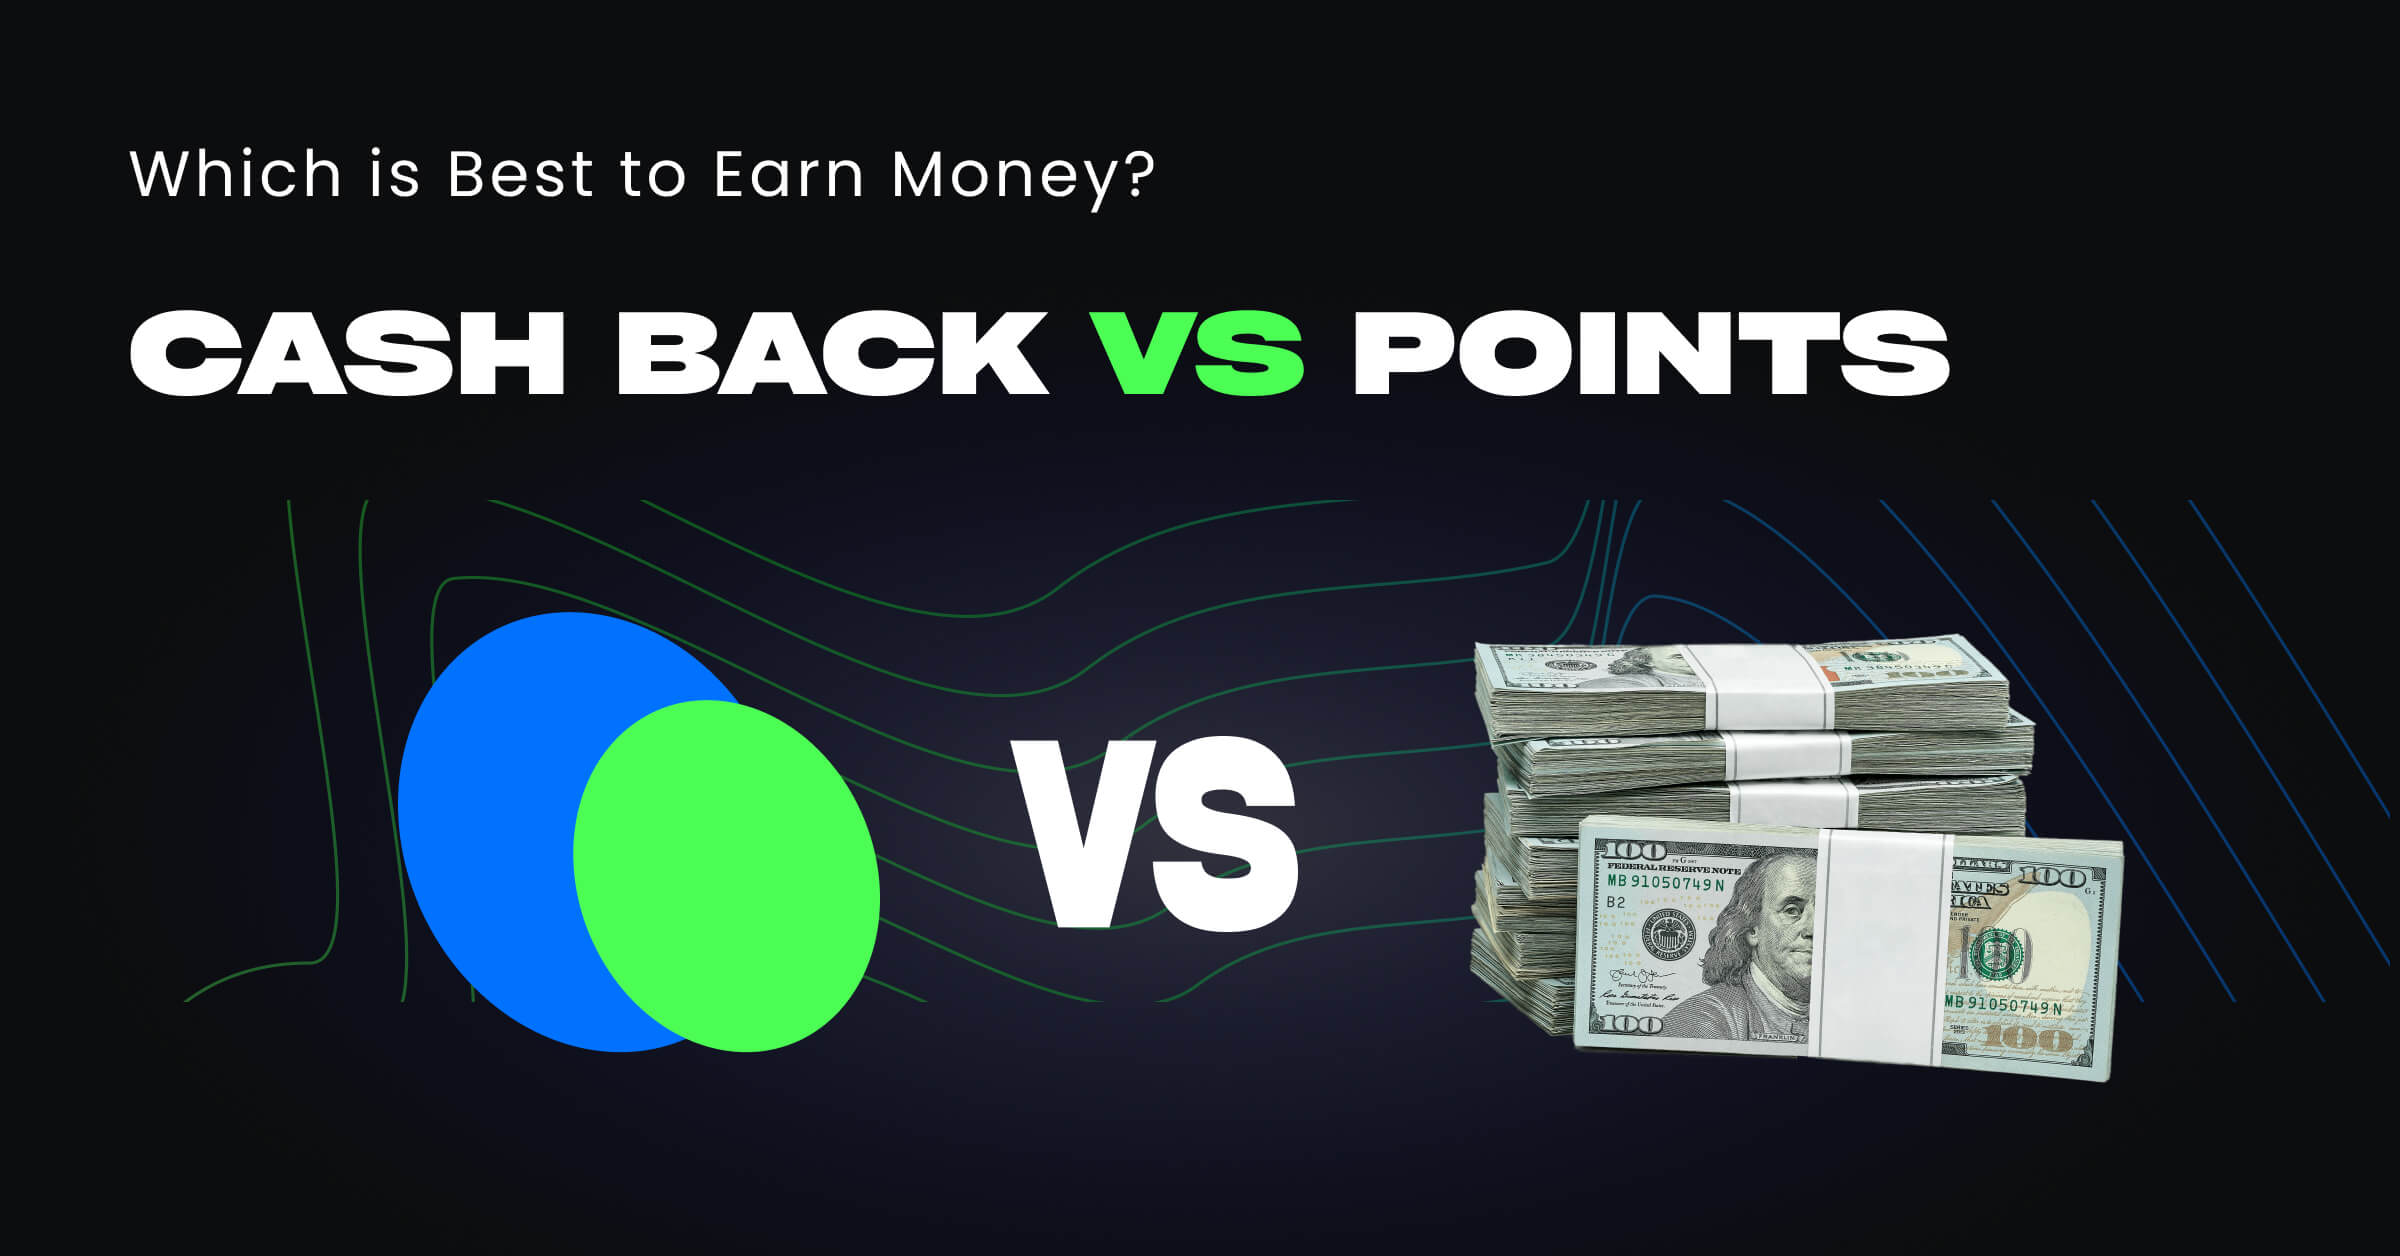 cashback vs points image 1